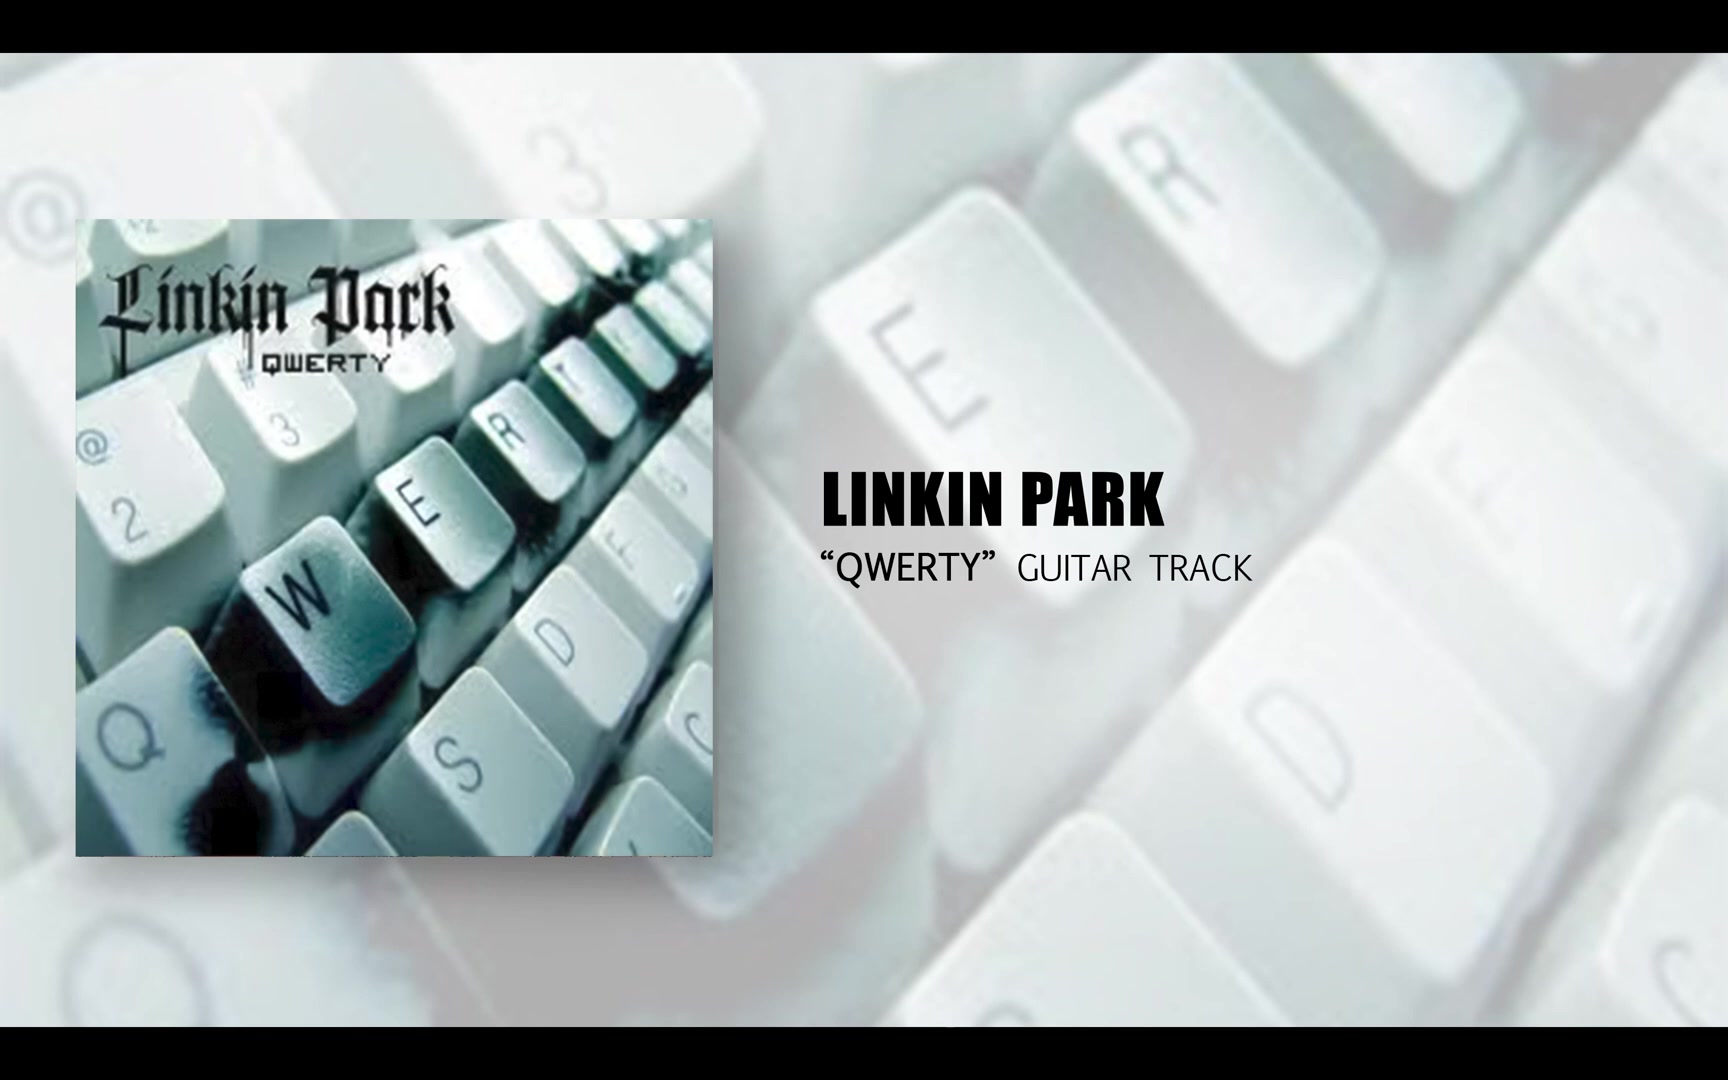 【林肯公园 | Linkin Park】Qwerty 音轨